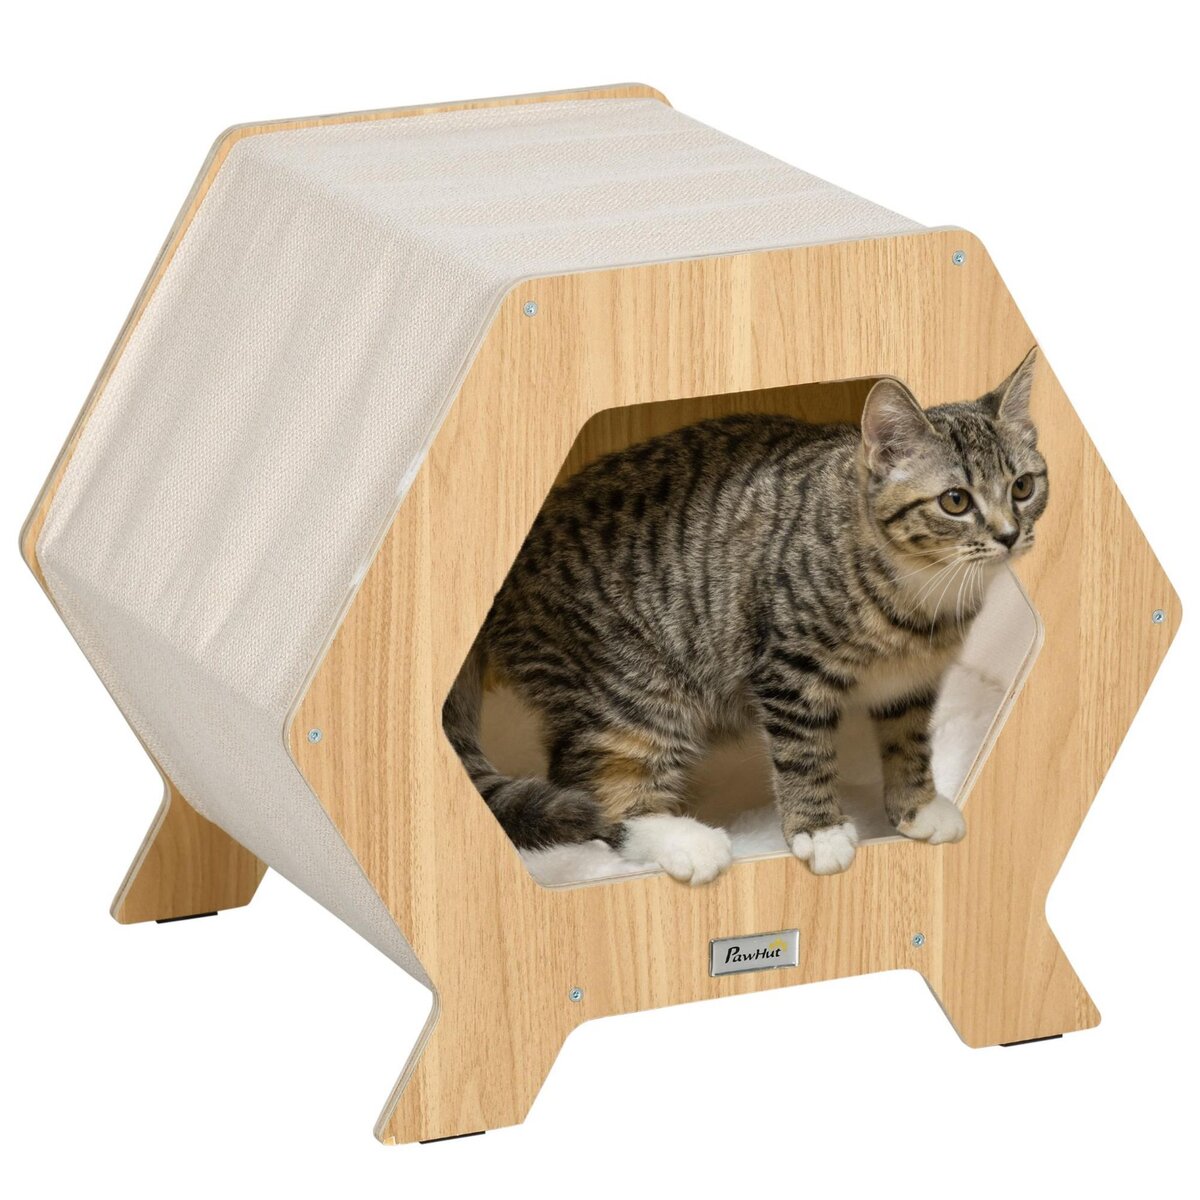 PAWHUT Maison pour chat design hexagonal - niche chat panier chat - coussin fourrure amovible, grattoir jute naturelle - contreplaqué aspect bois clair